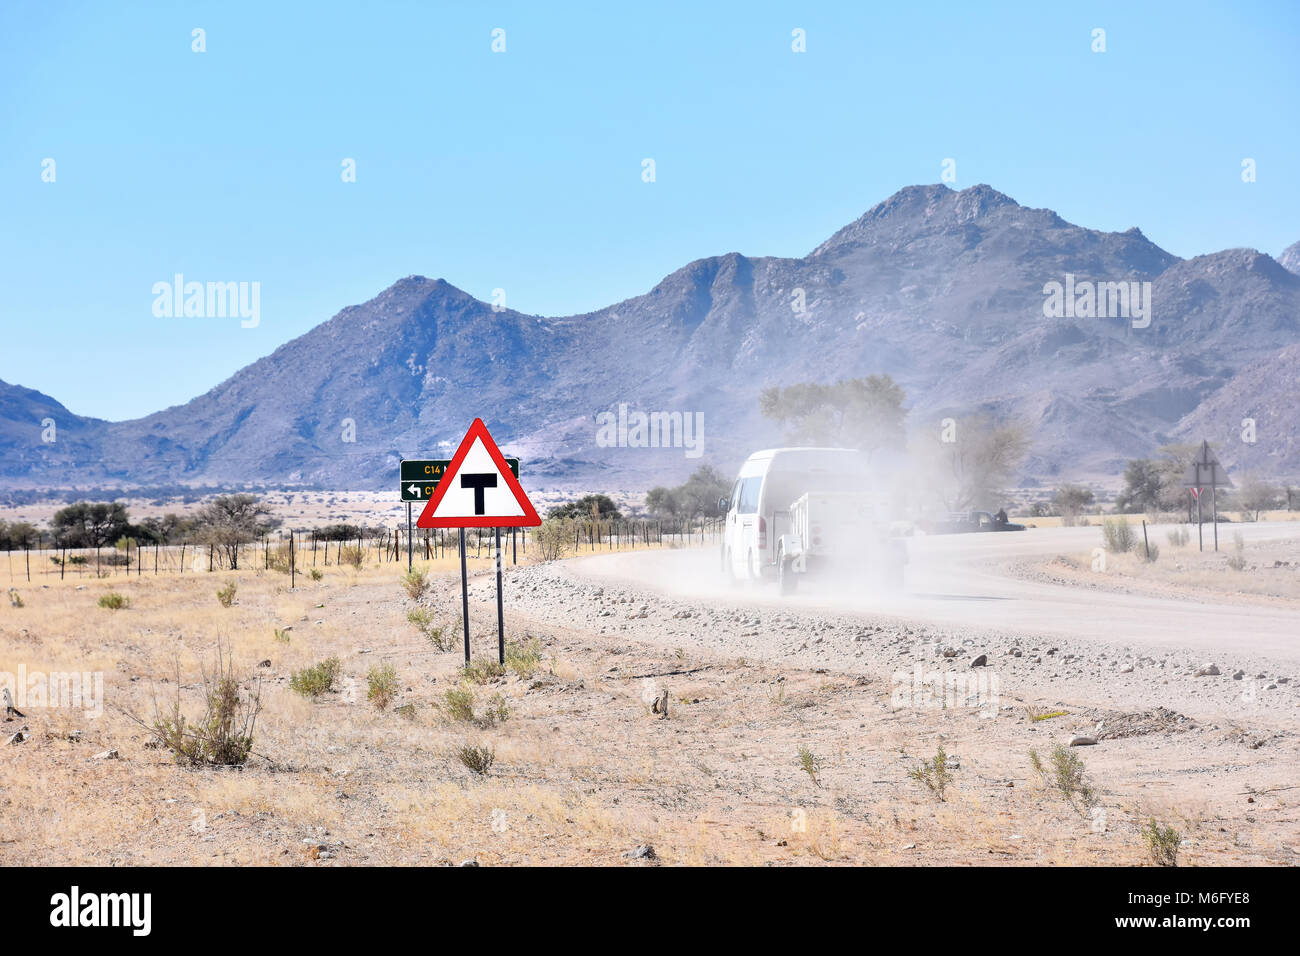 Una giunzione a t un cartello stradale vicino alla città di solitario in Namibia in Sud Africa con un veicolo passando da su una strada di ghiaia in polvere contro la montagna Foto Stock